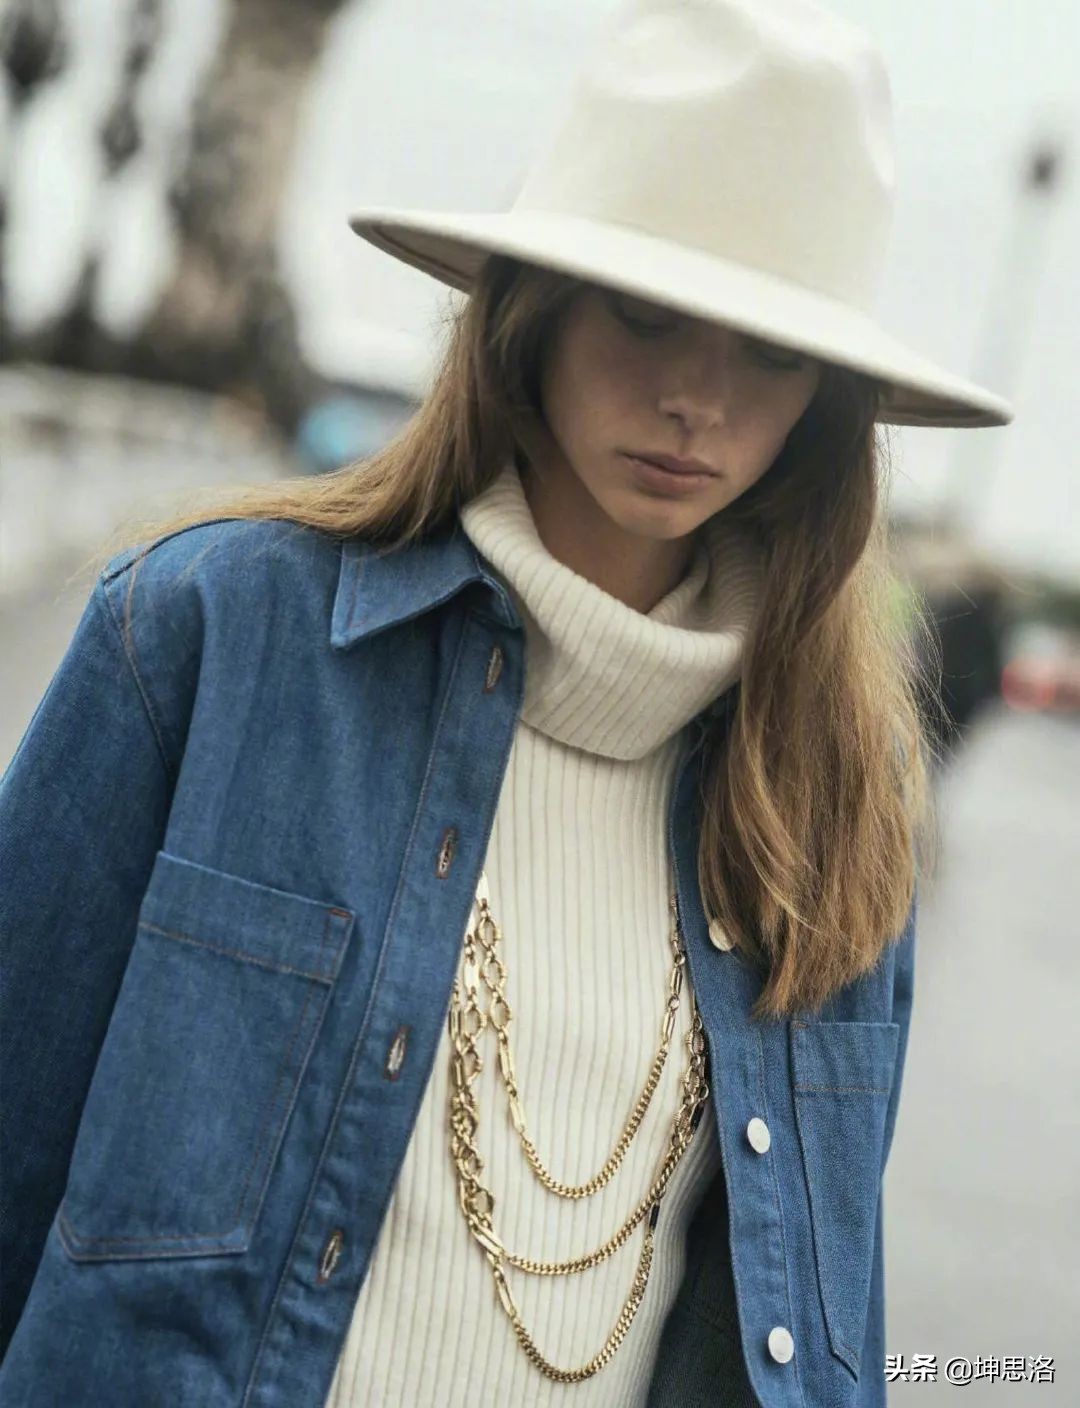 时装大片丨巴黎女郎的时髦街拍 70年代法式复古秋冬穿搭指南